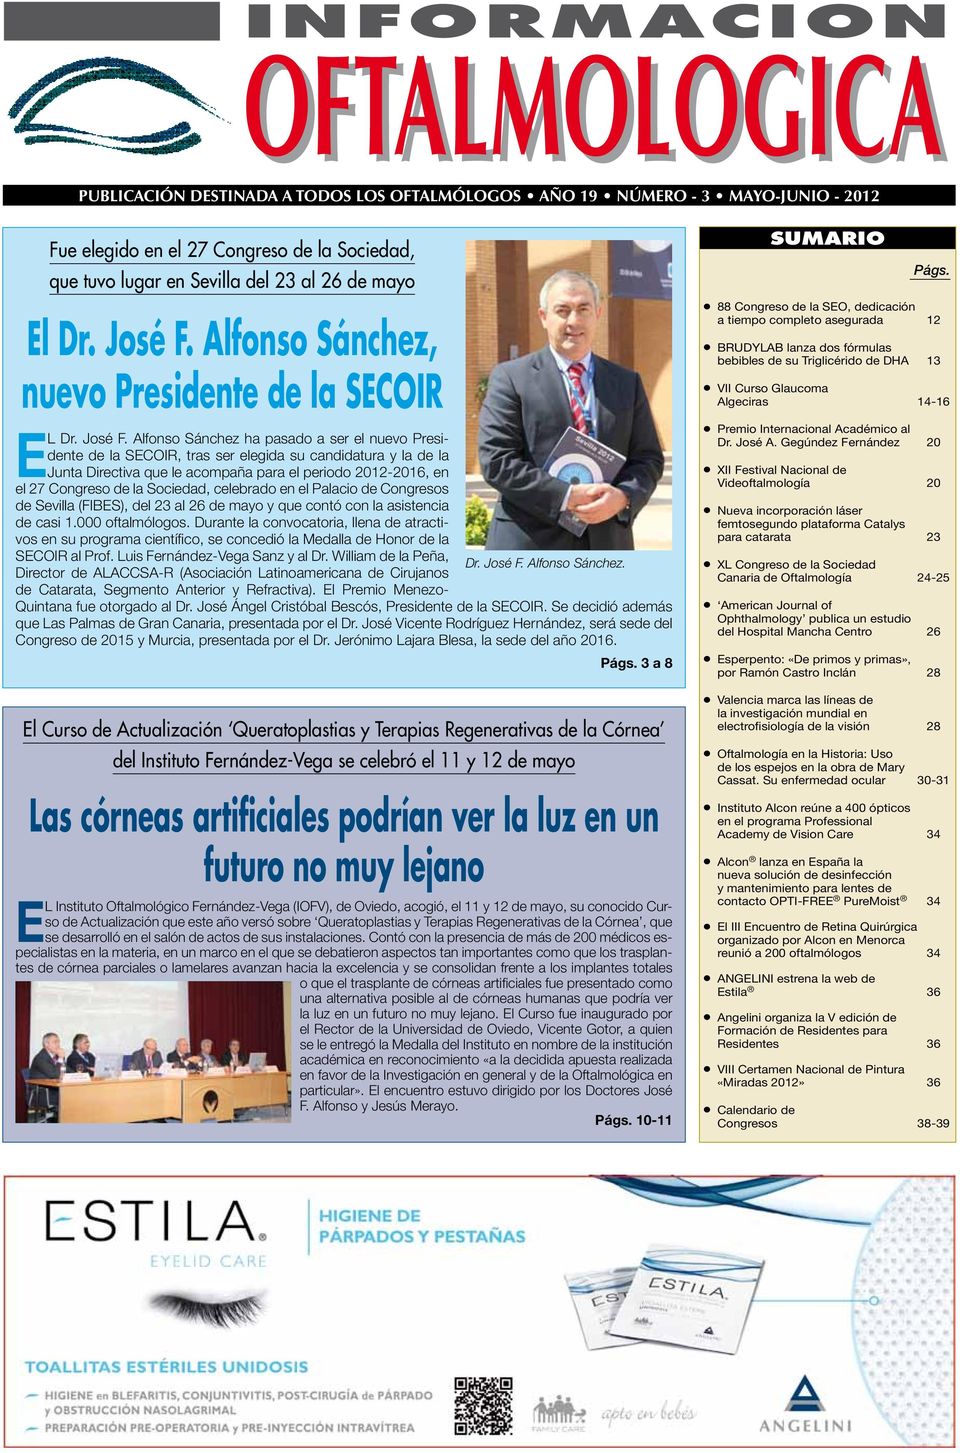 Alfonso Sánchez ha pasado a ser el nuevo Presidente de la SECOIR, tras ser elegida su candidatura y la de la Junta Directiva que le acompaña para el periodo 2012-2016, en el 27 Congreso de la